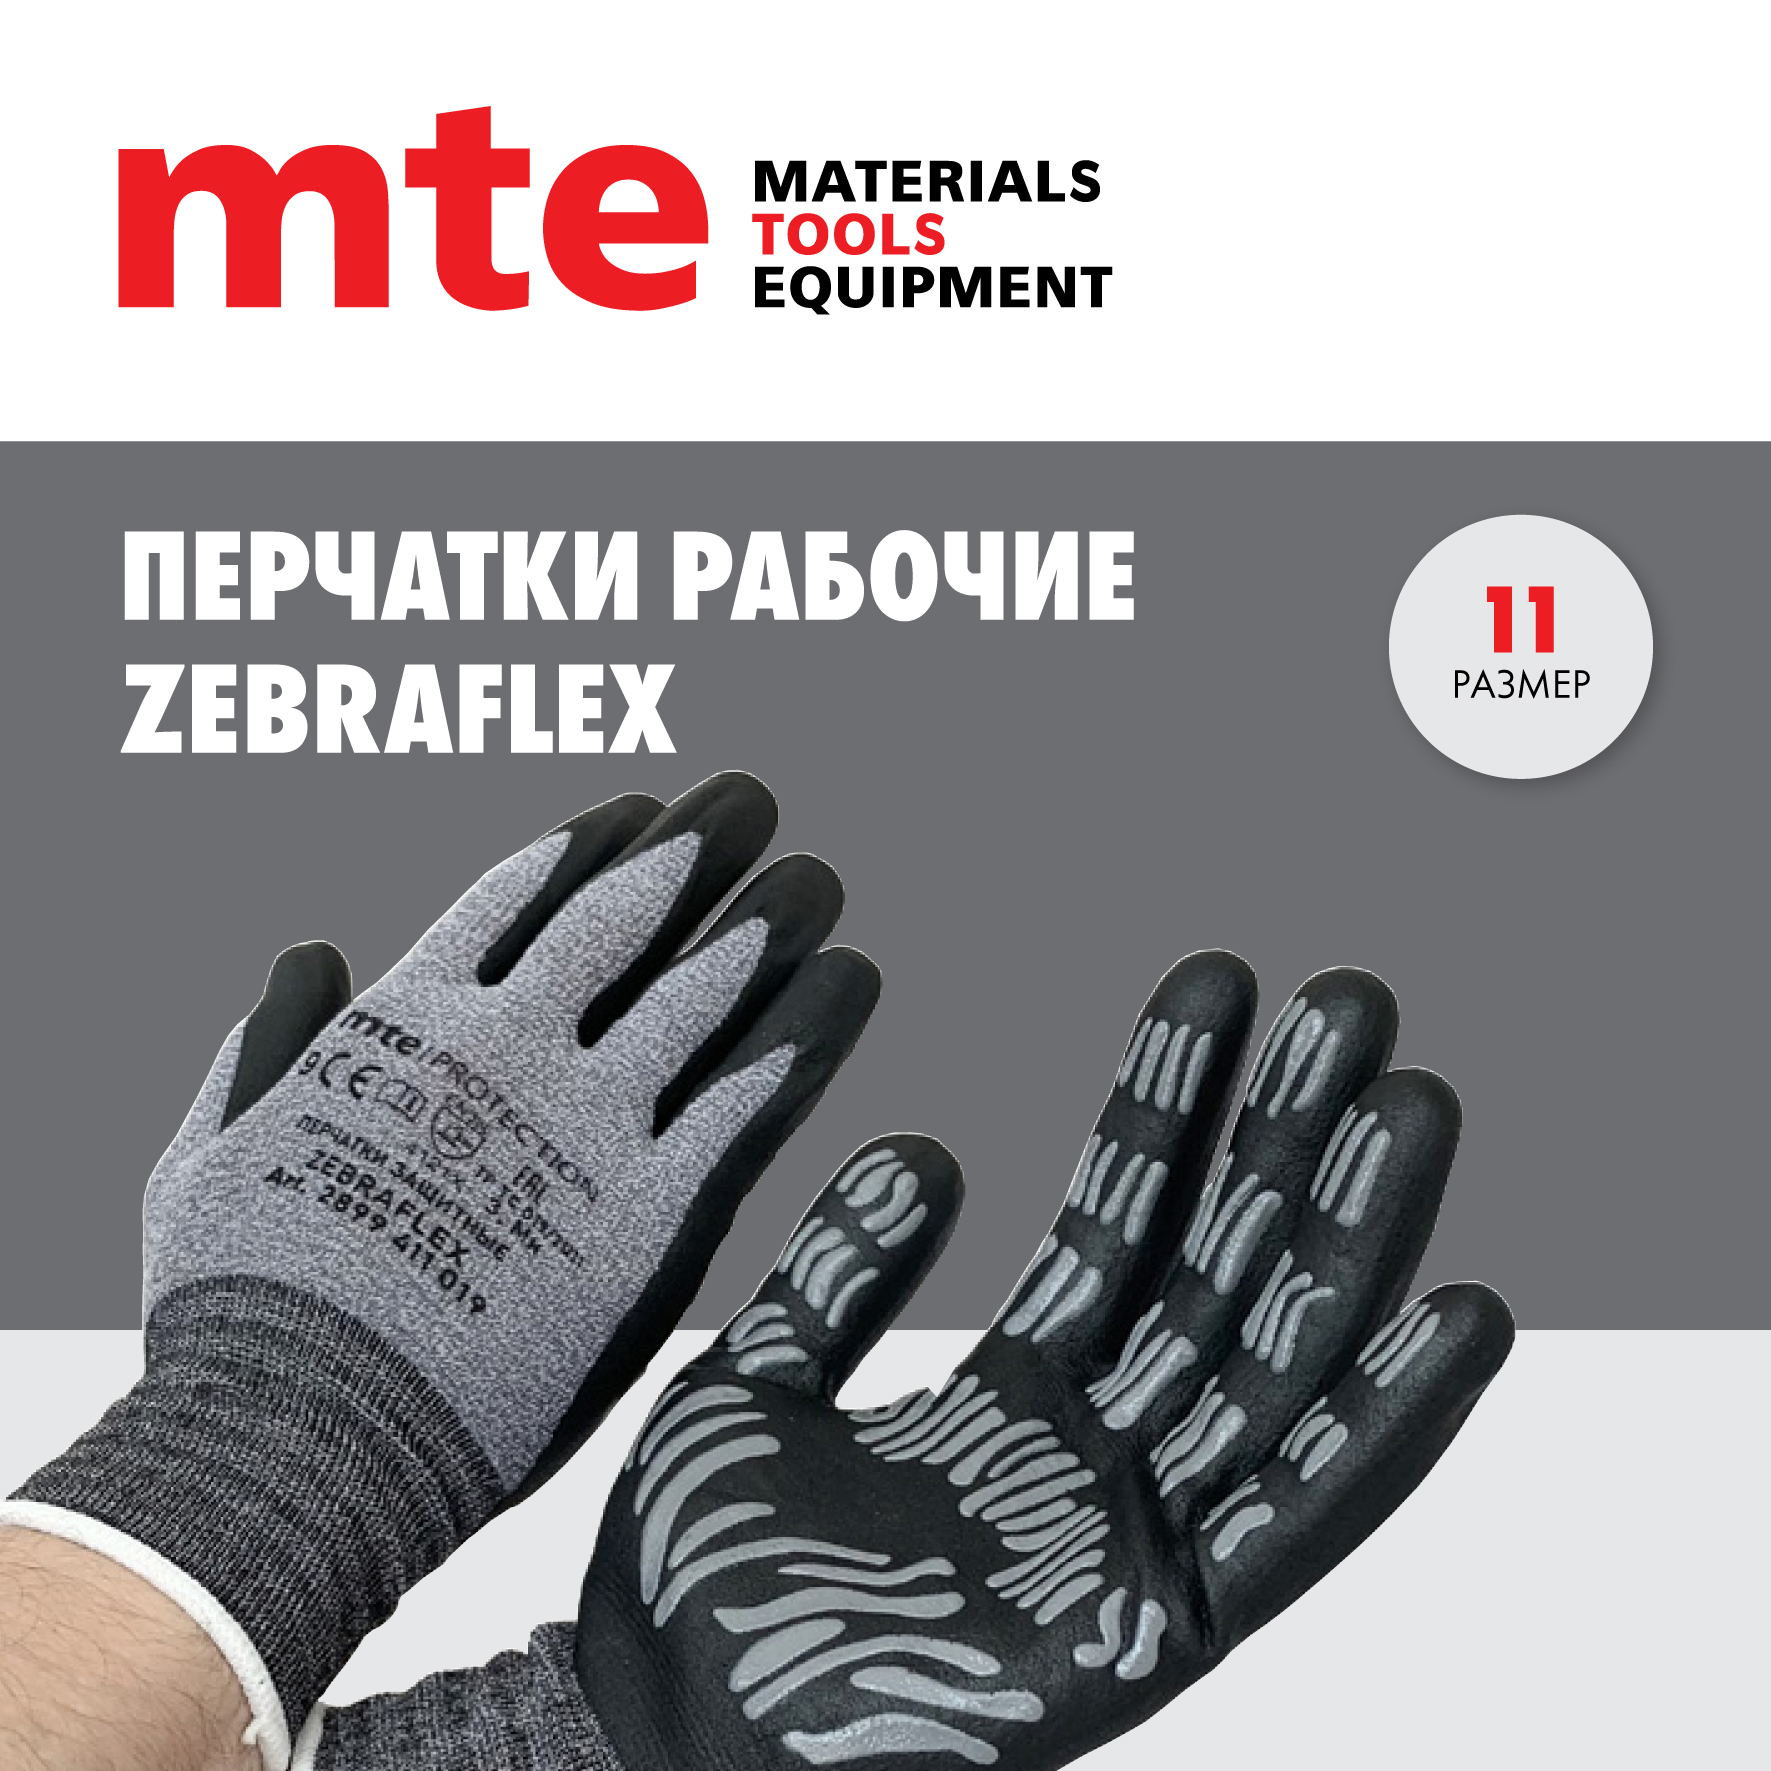 Универсальные защитные перчатки mte ZEBRAFLEX Р.11 перчатки вязанные